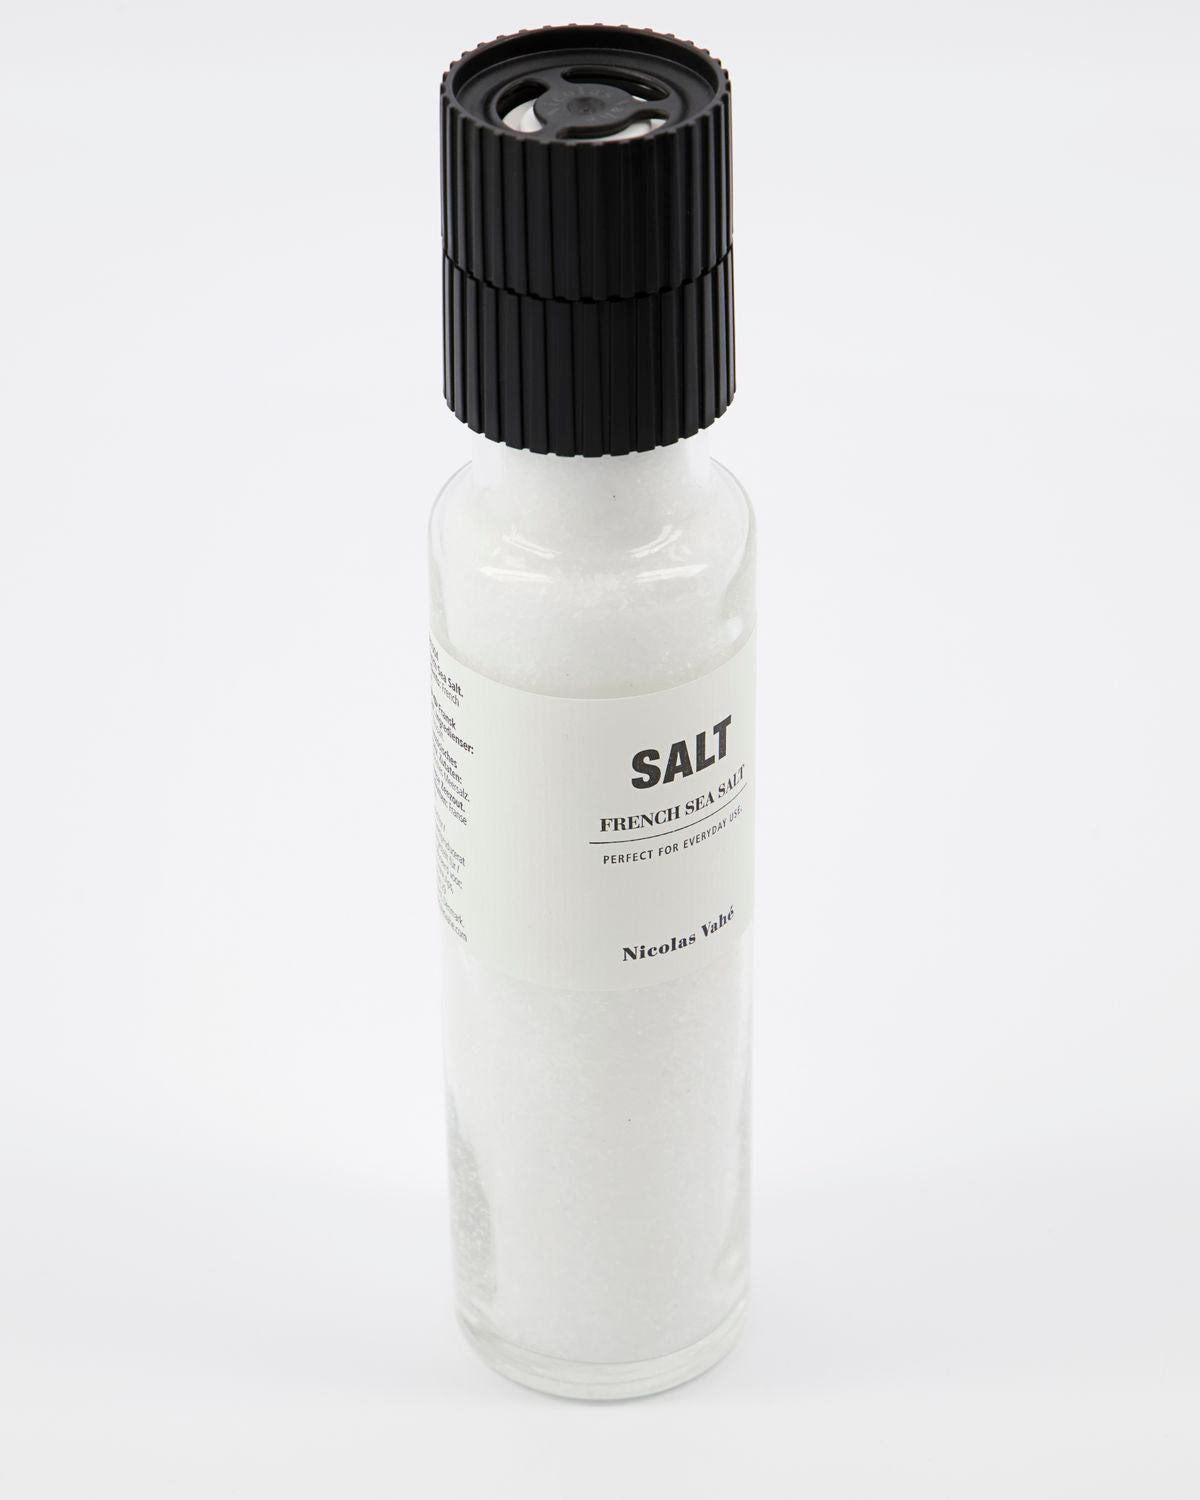 Salt, French Sea Salt